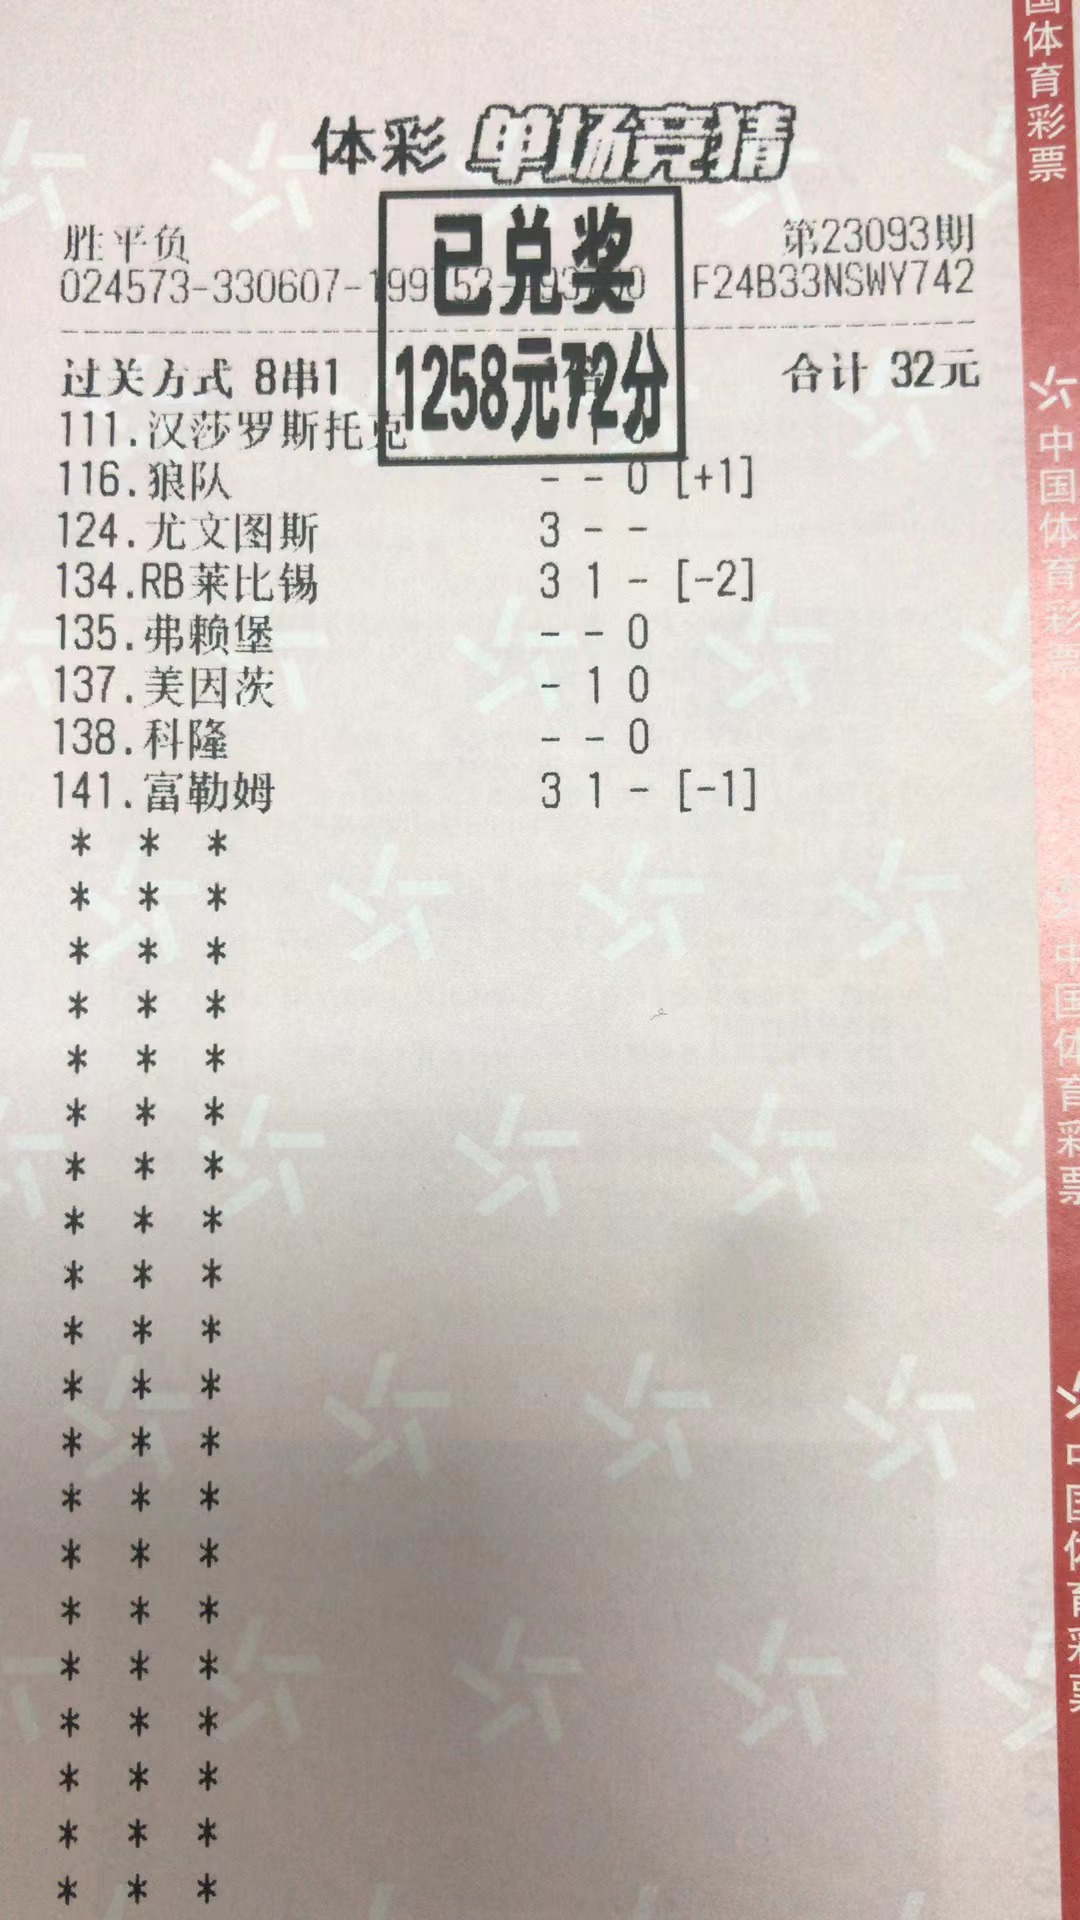 9月18日胜平负收米1258元-北单实体店